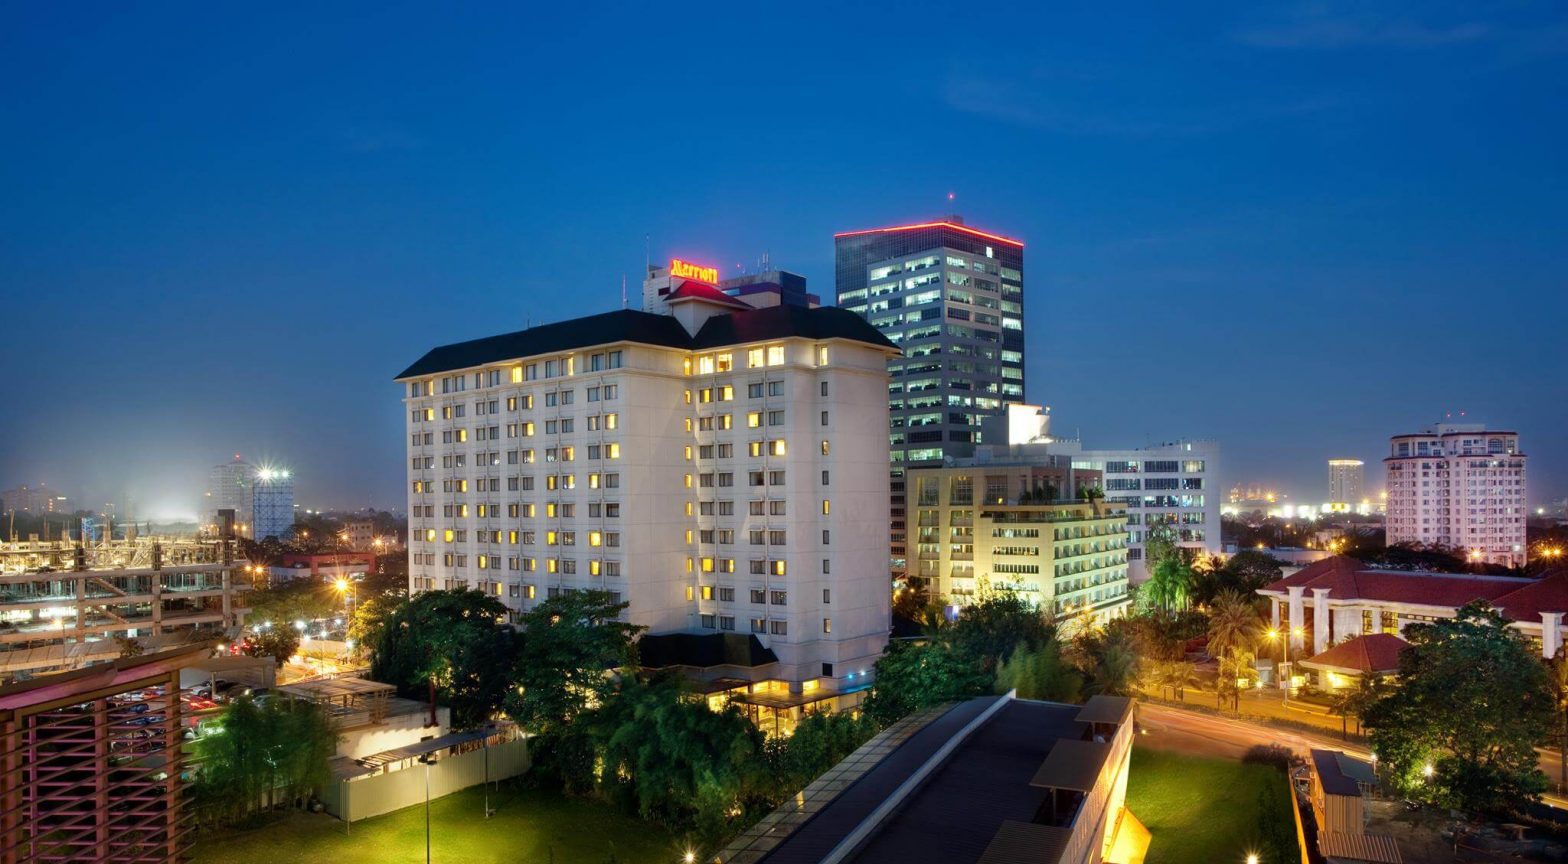 Cebu City Marriott Hotel to close on January 1